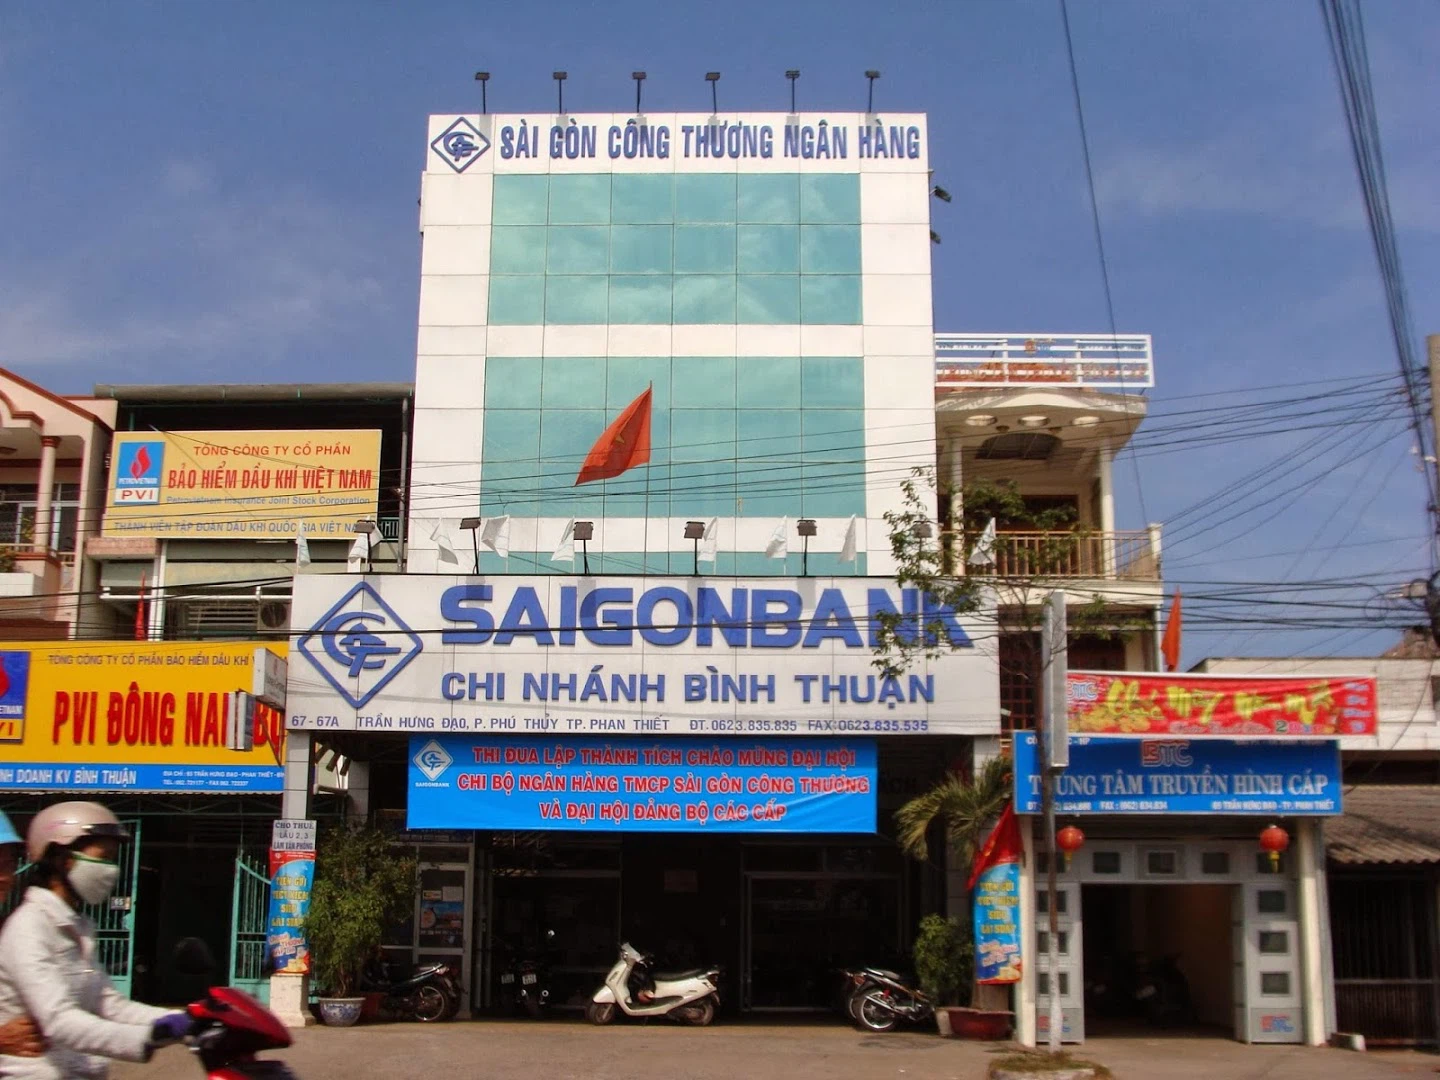 Riepilogo dei prodotti finanziari di Saigonbank